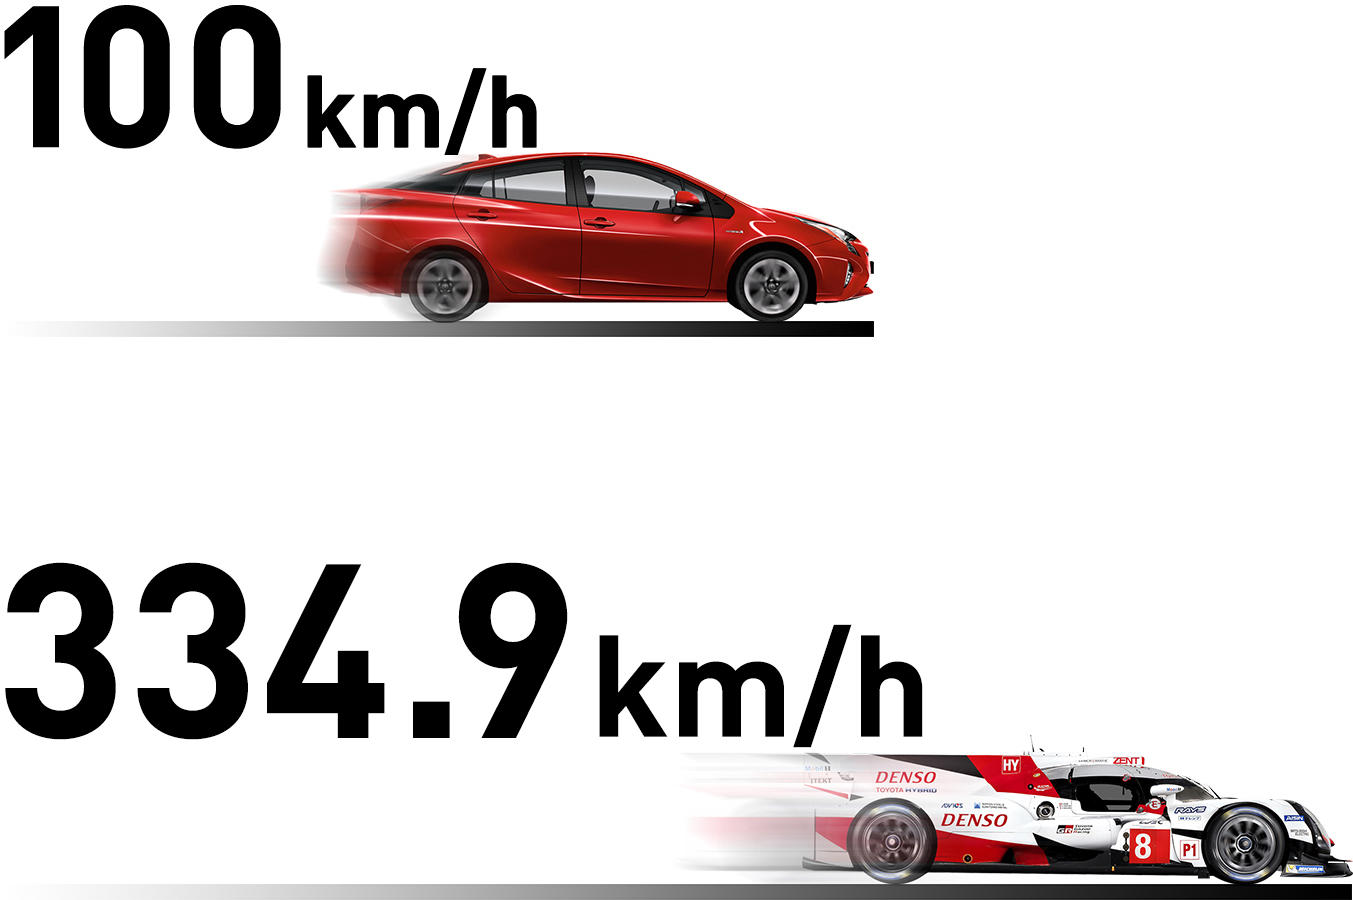 日本国内の公道においての最高速100km/hで走ることができるプリウスと最高速334.9km/hで走ることができるTS050 HYBRID